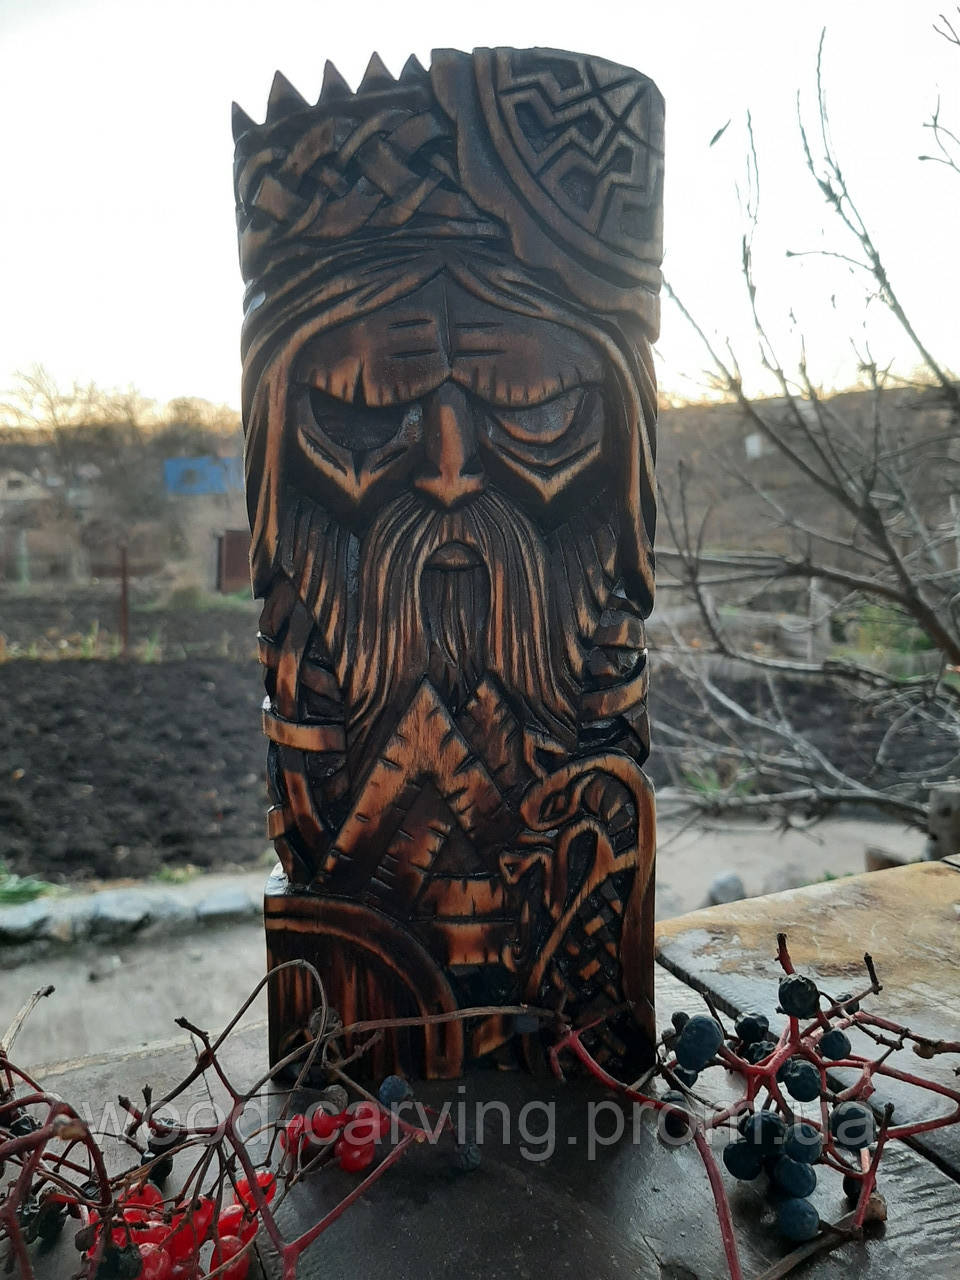 Дерев'яне панно "Бог Одін" (Óðinn). Варіант №2. Скандинавська міфологія